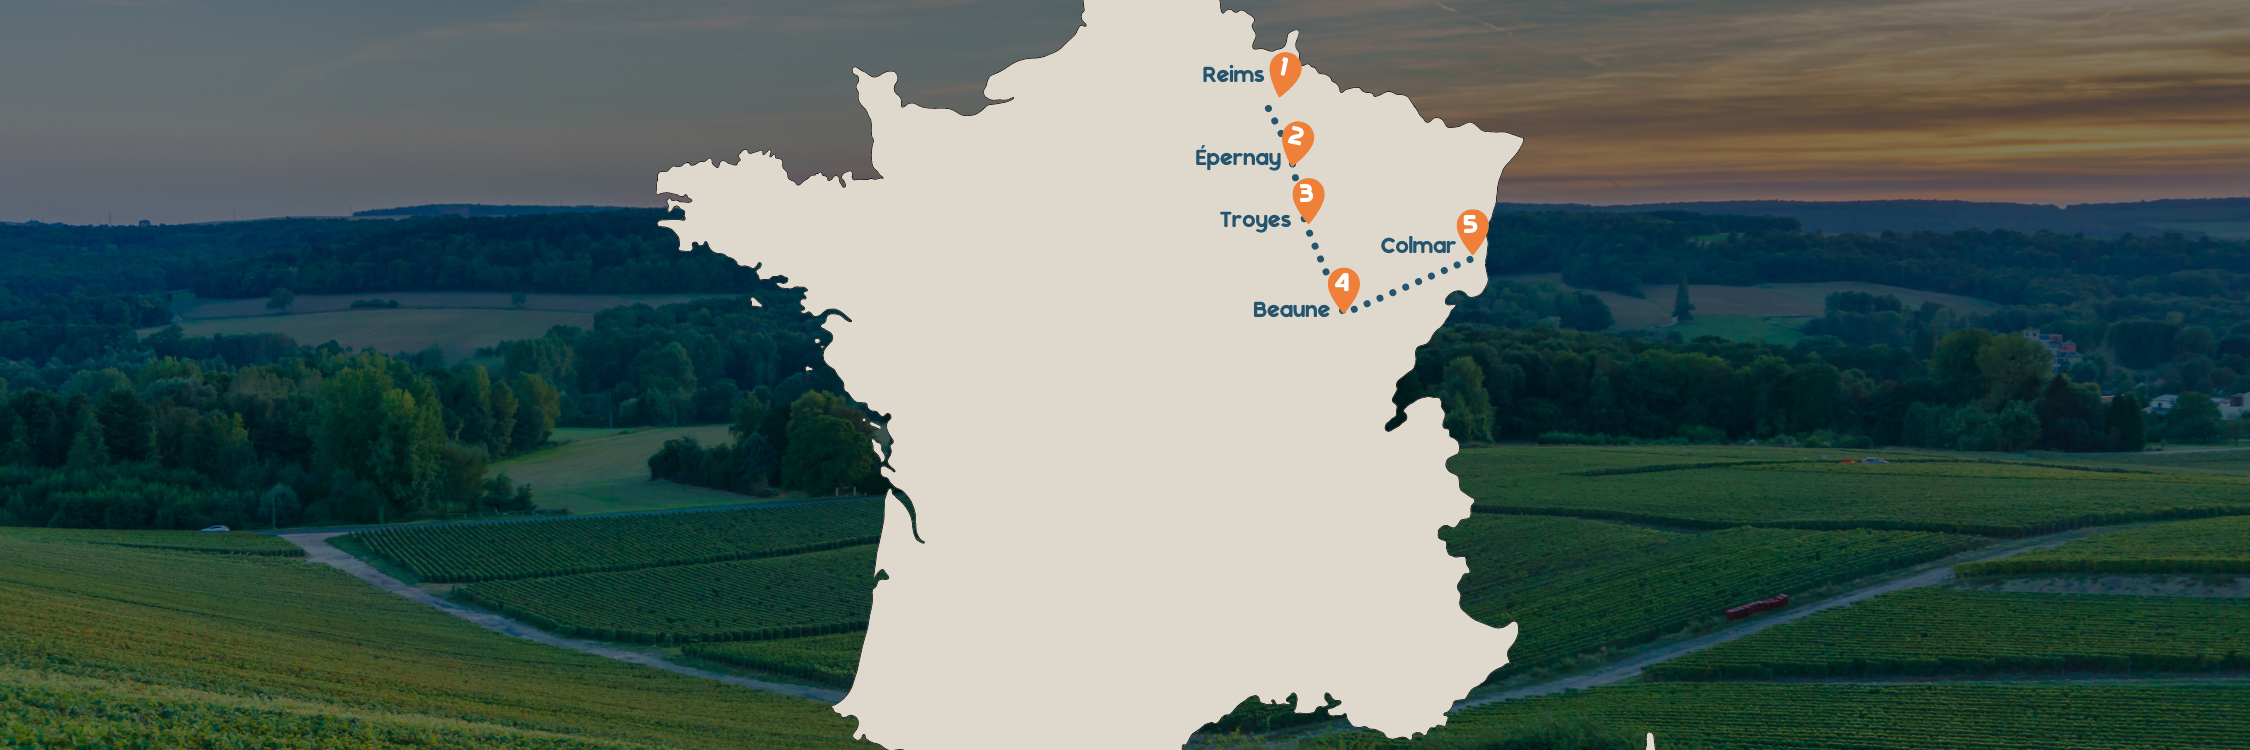 Frankrijk kaart champagnestreek langs Reims, Troyes, Beaune en Colmar